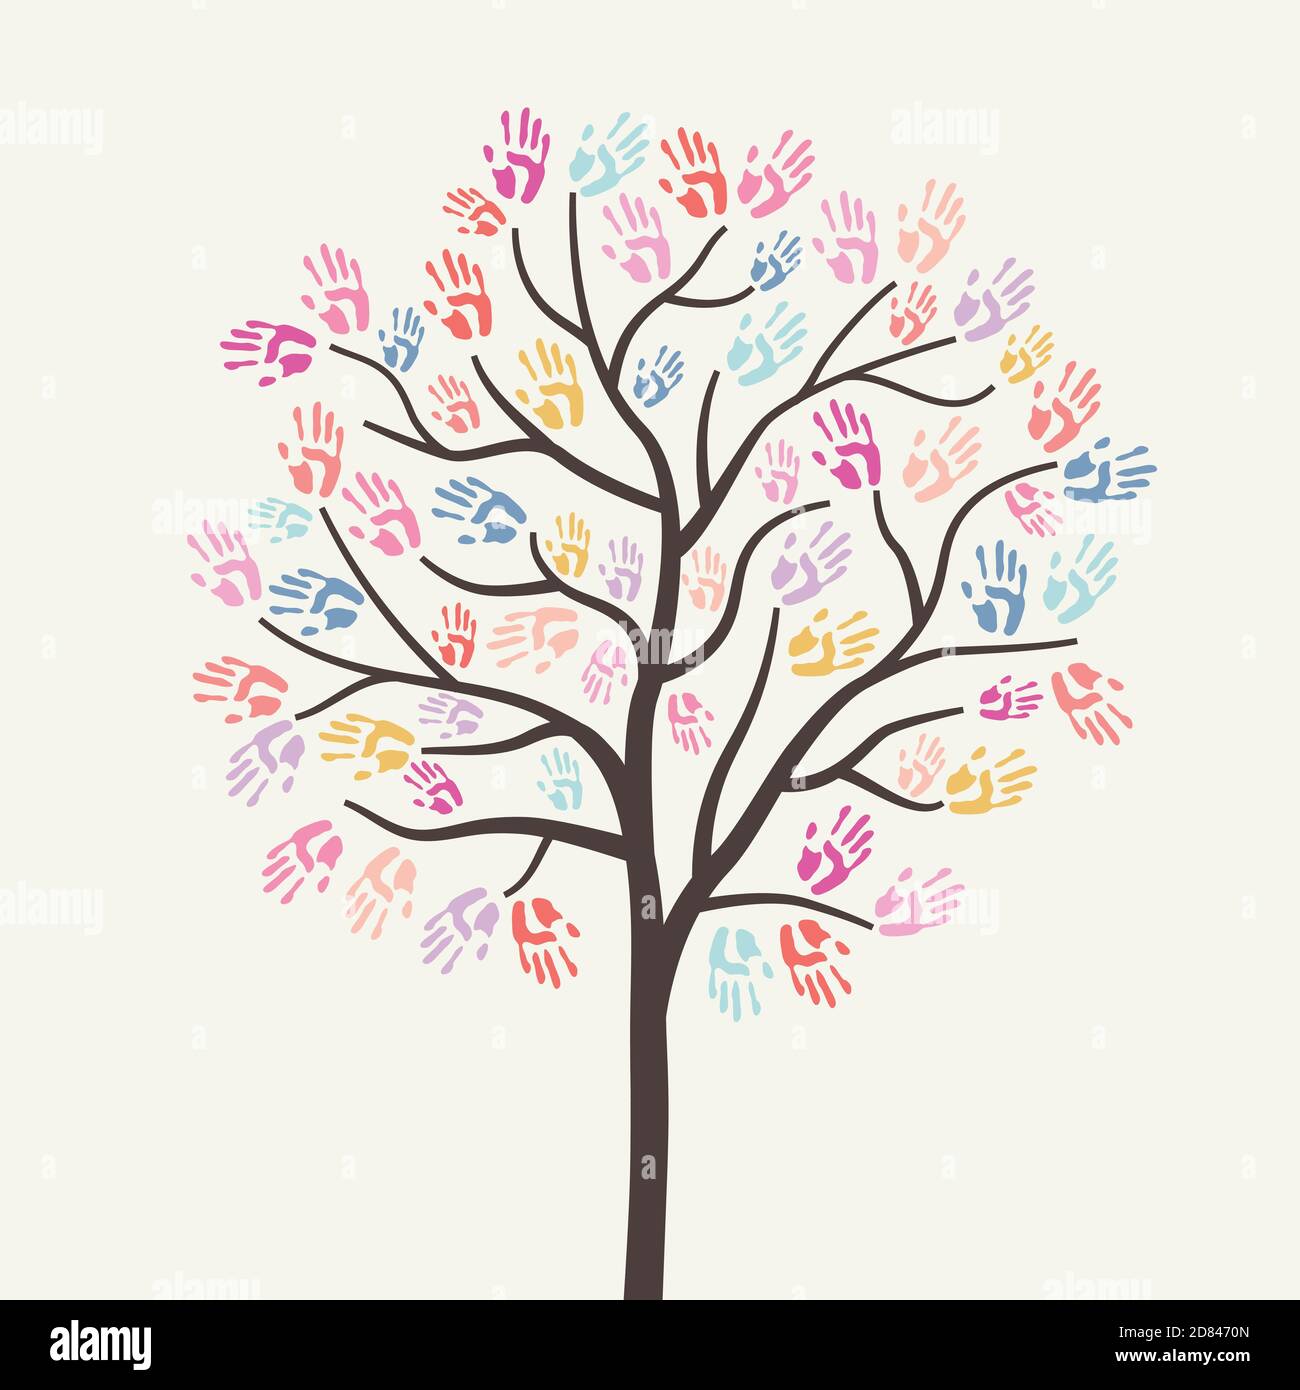 Charity Illustration mit Baum erstellt von Handdrucken. Wohltätigkeitsorganisation, Hilfe. Spenden, Geld geben. Vektorgrafik, flaches Design. Stock Vektor